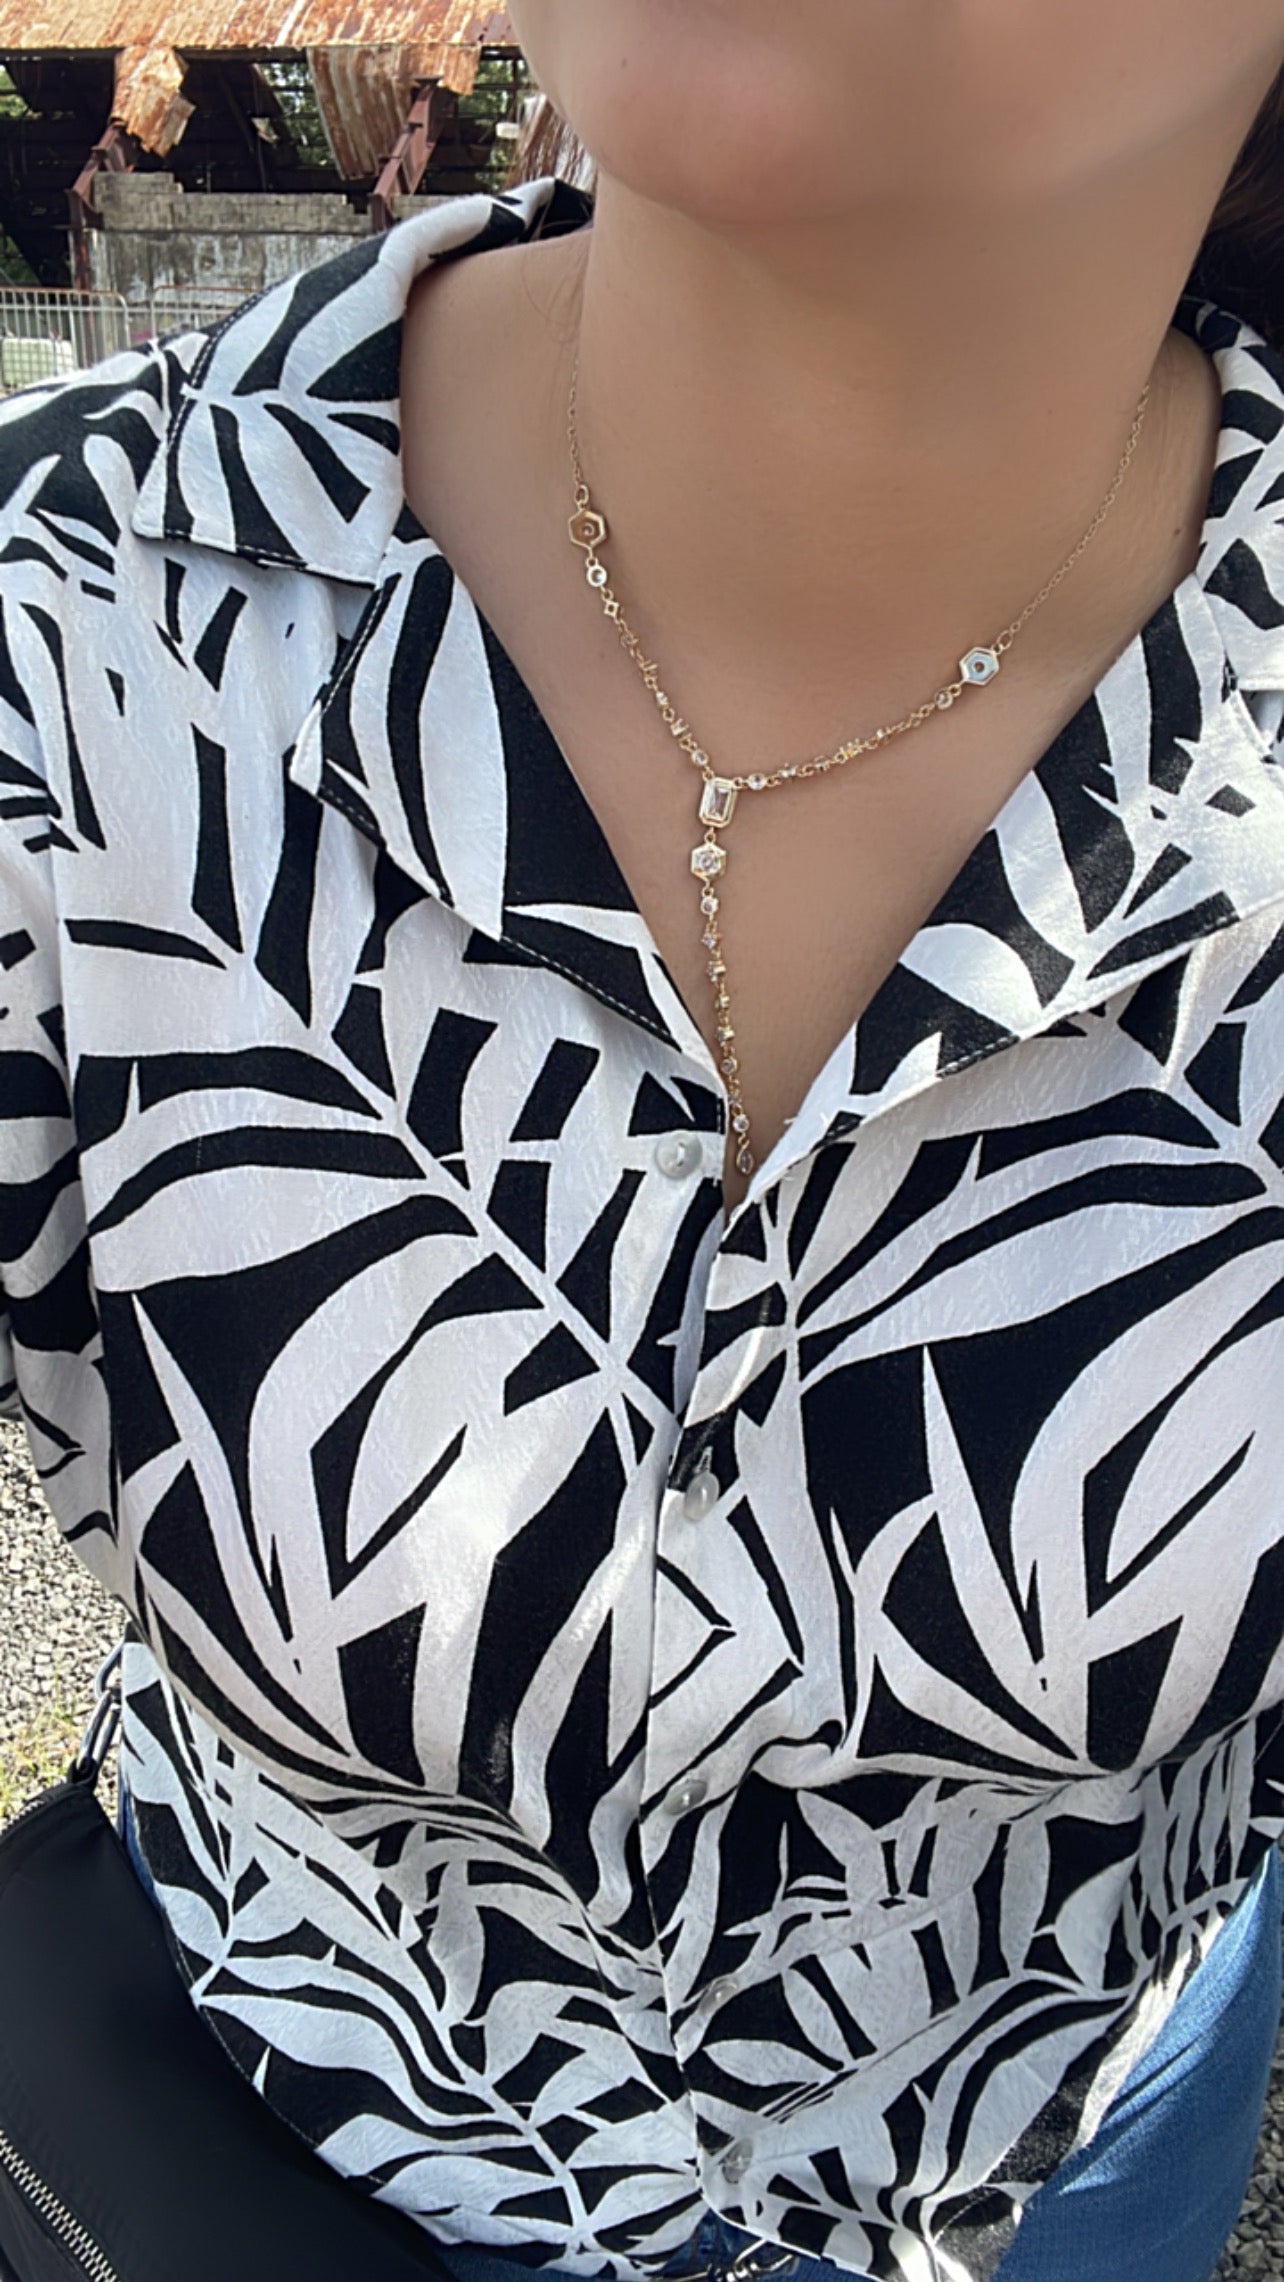 Stephania necklace